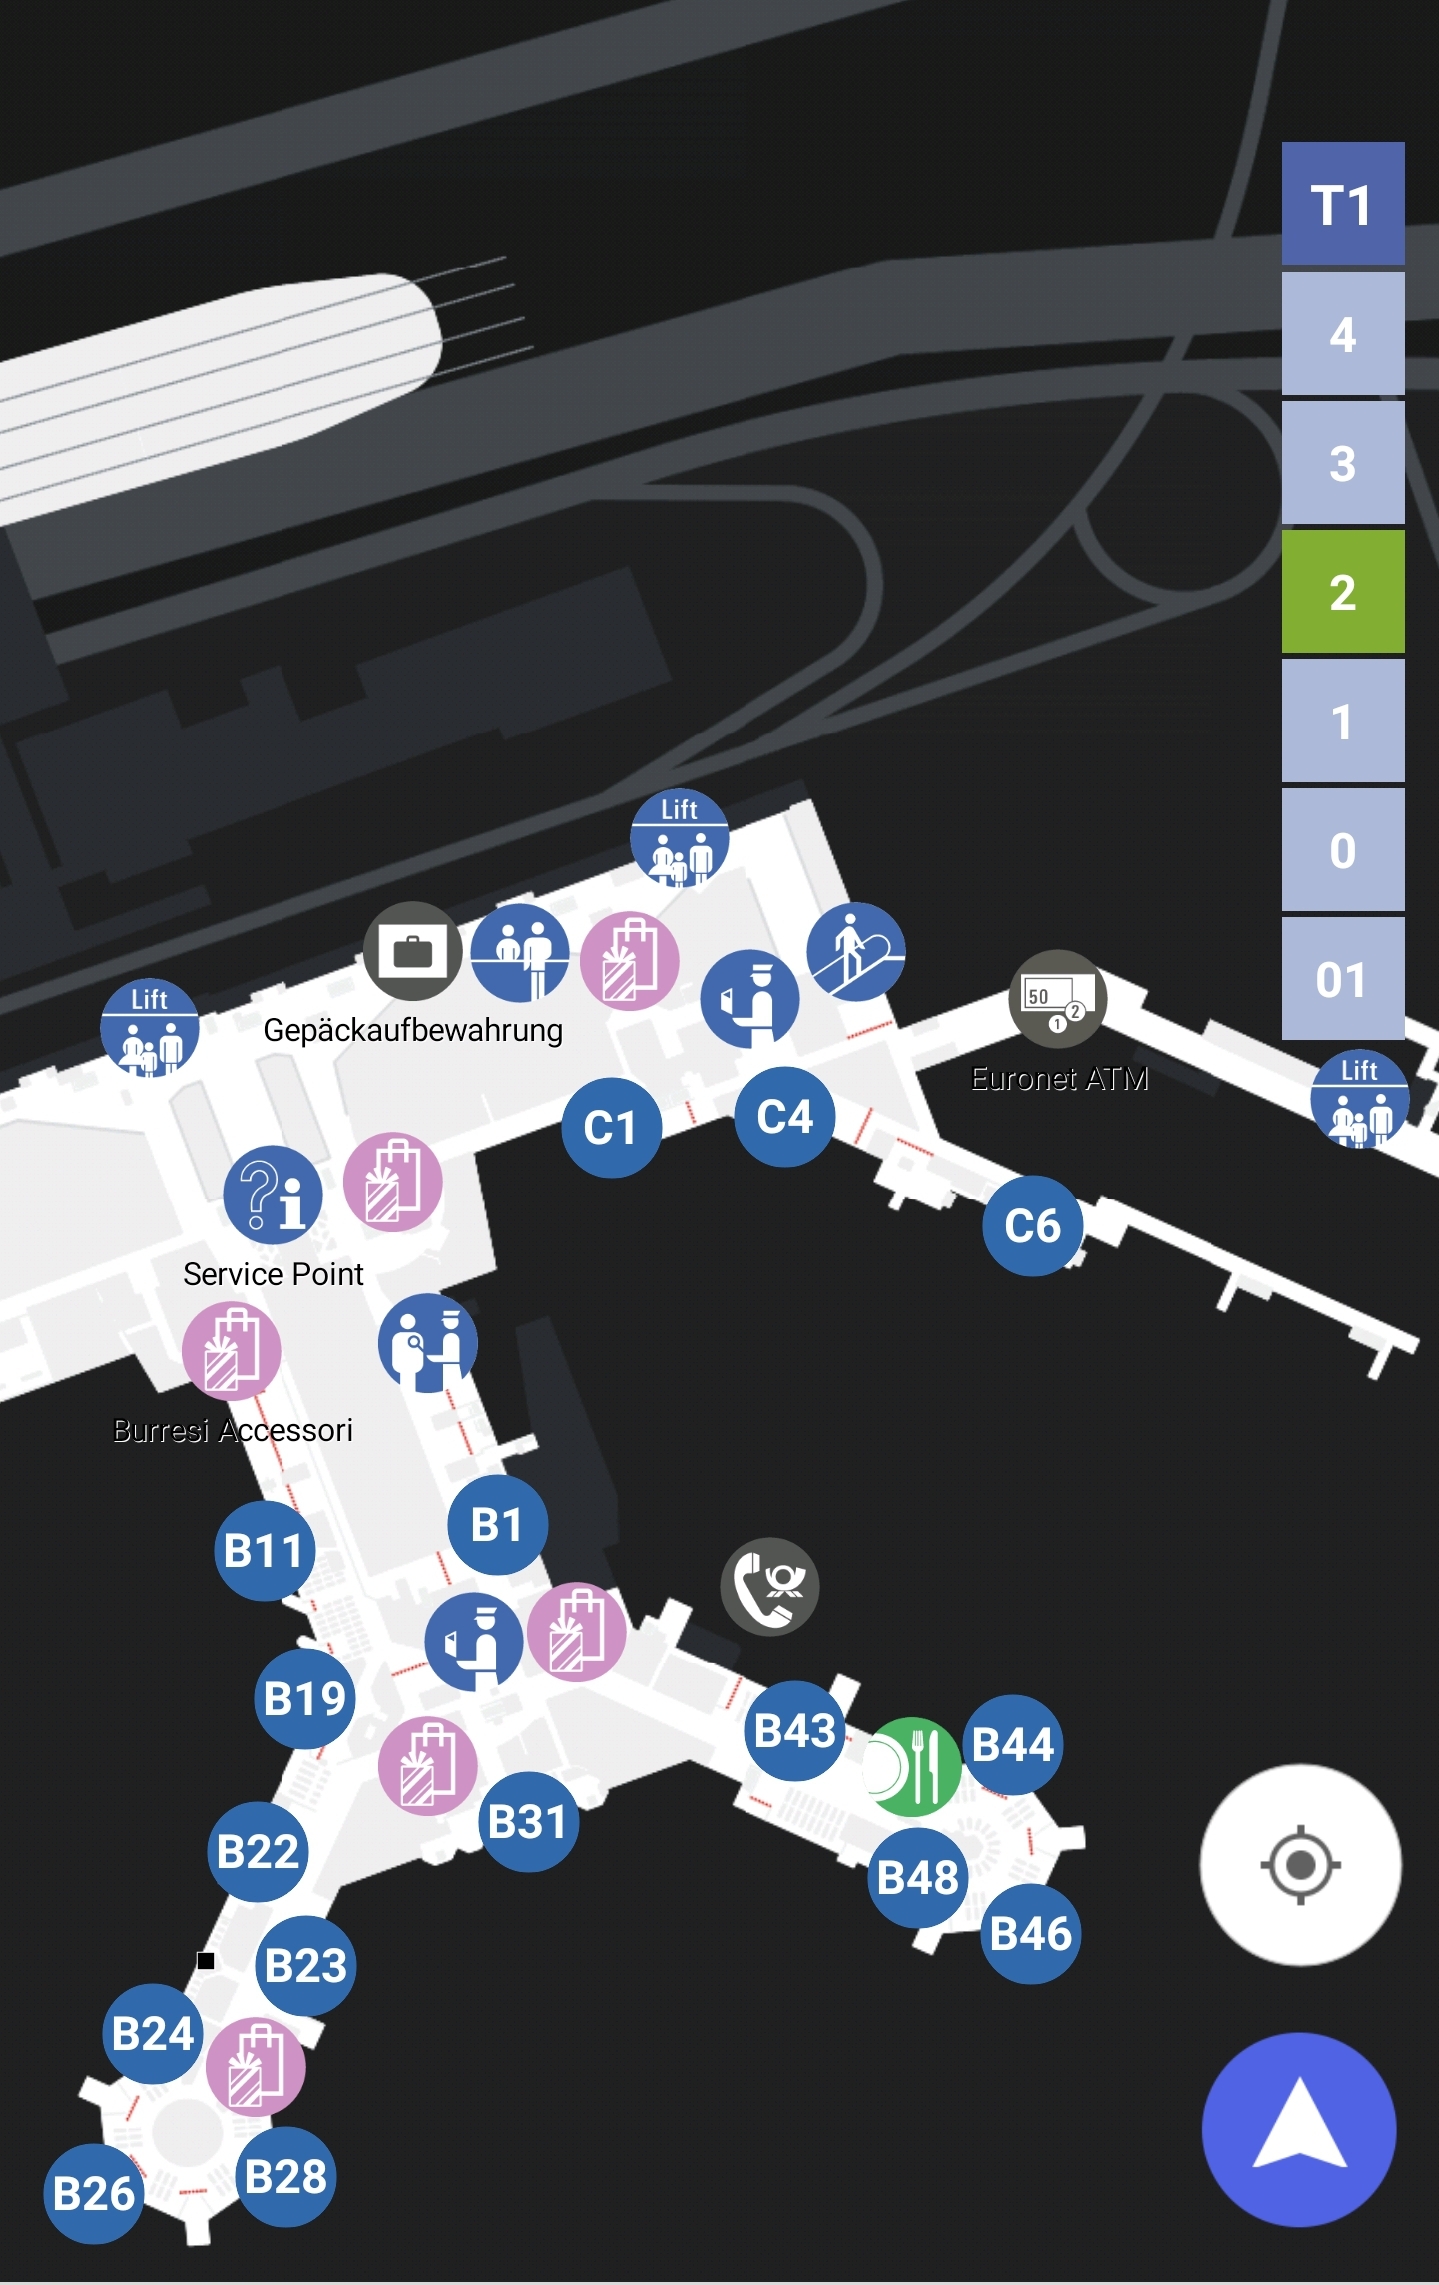 Karten Maps Terminal 1 mit Ebene 2 und Gates B C am Flughafen Frankfurt Airport FRA